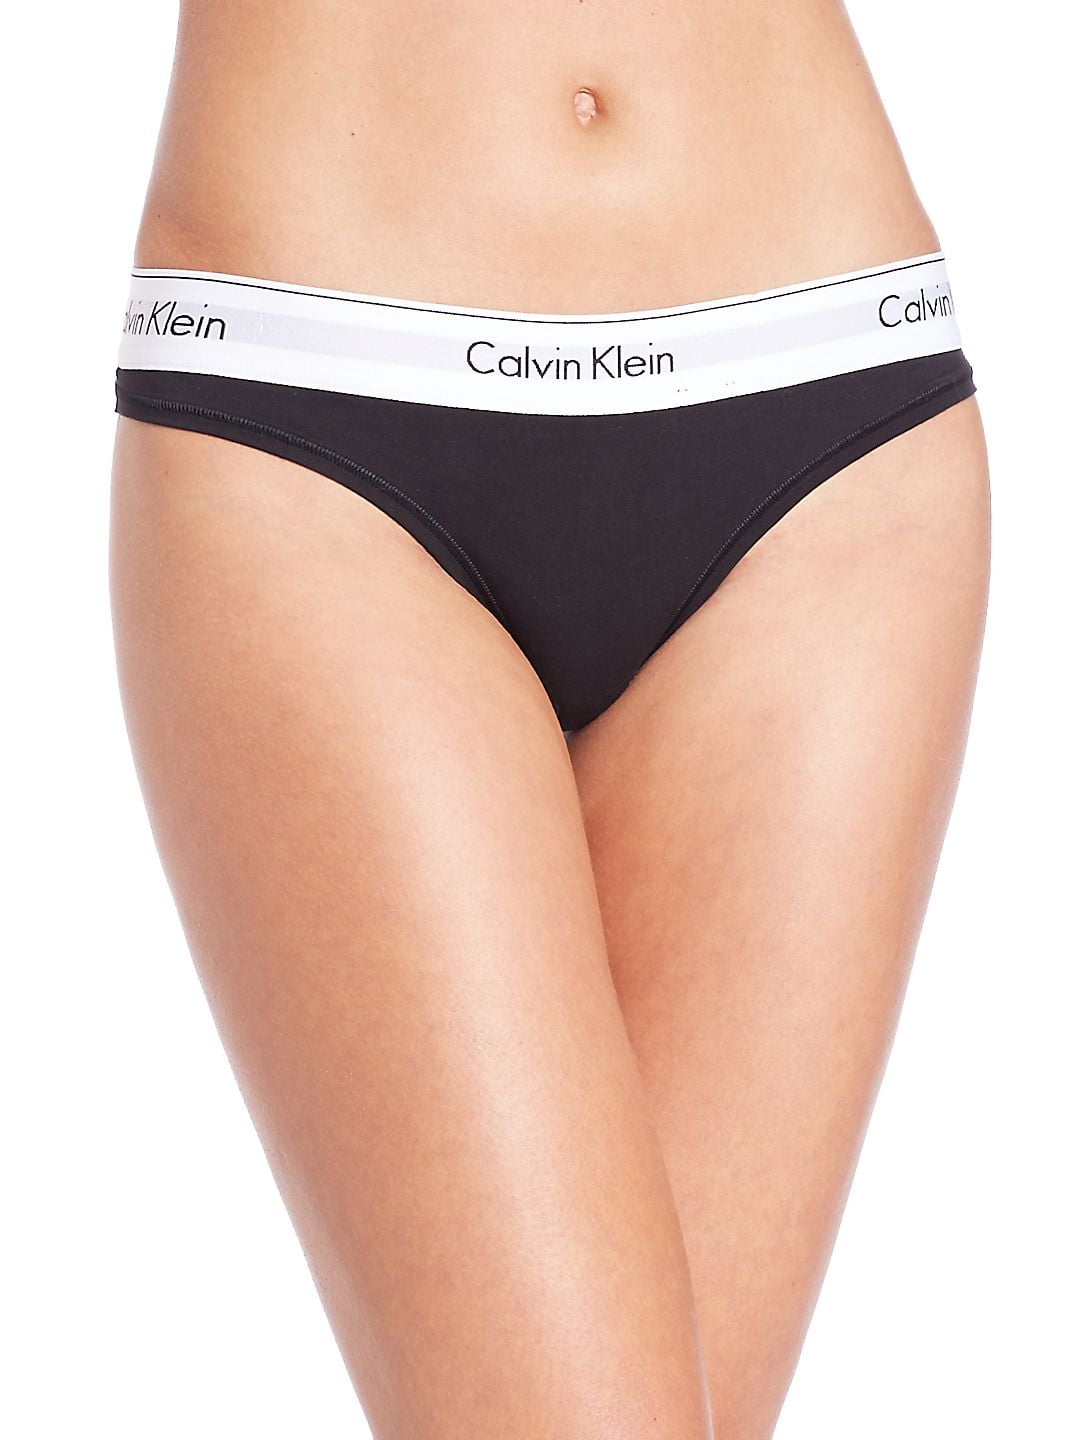 Calvin Klein Women's Modern Cotton Boyshort Panty, Black, XS